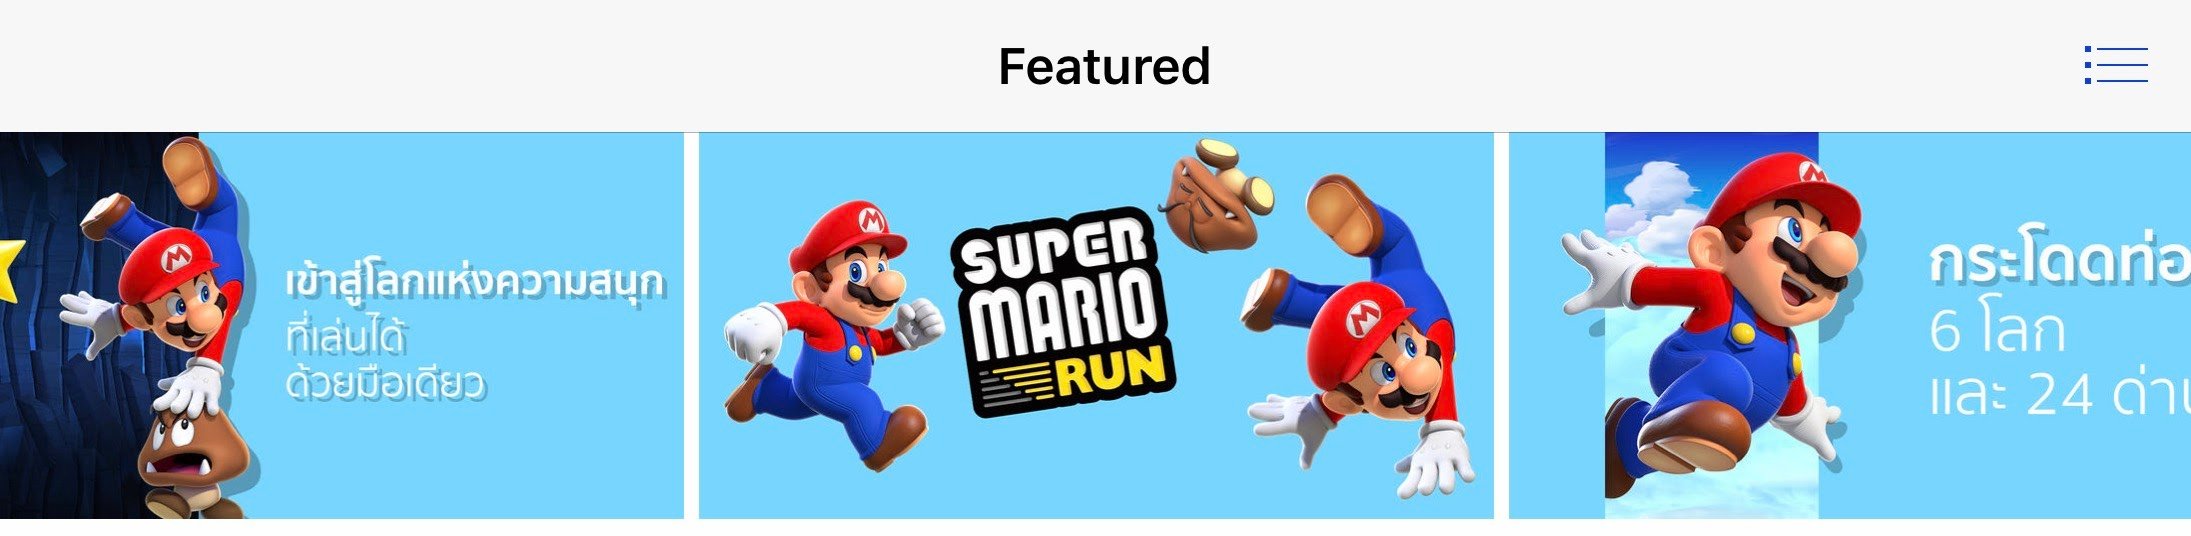 alt="Super Mario Run"